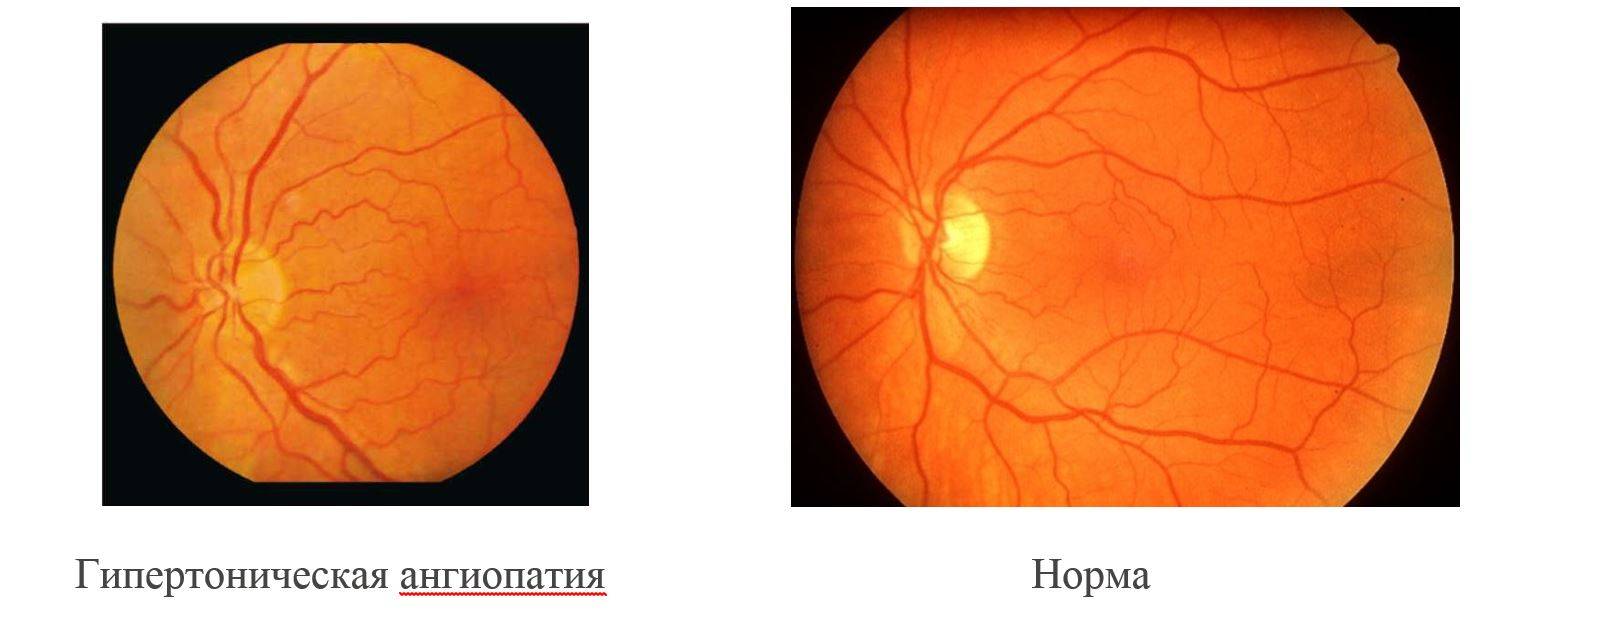 Ангиопатия сетчатки глаза - причины, симптомы и лечение - moscoweyes.ru - сайт офтальмологического центра "мгк-диагностик"